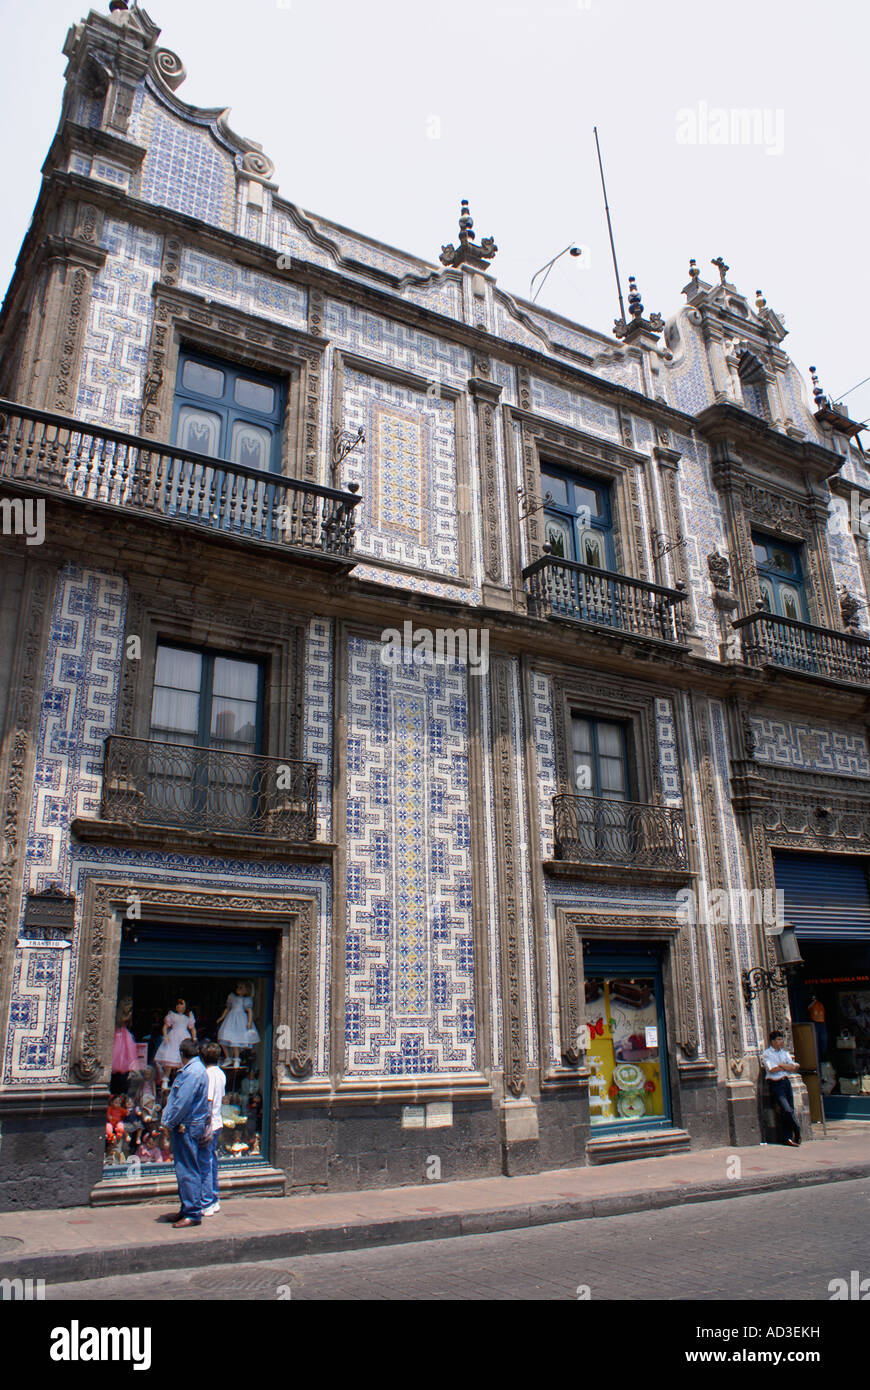 House of Tiles or Casa de los Azulejos in the Centro Historico, Mexico City Stock Photo